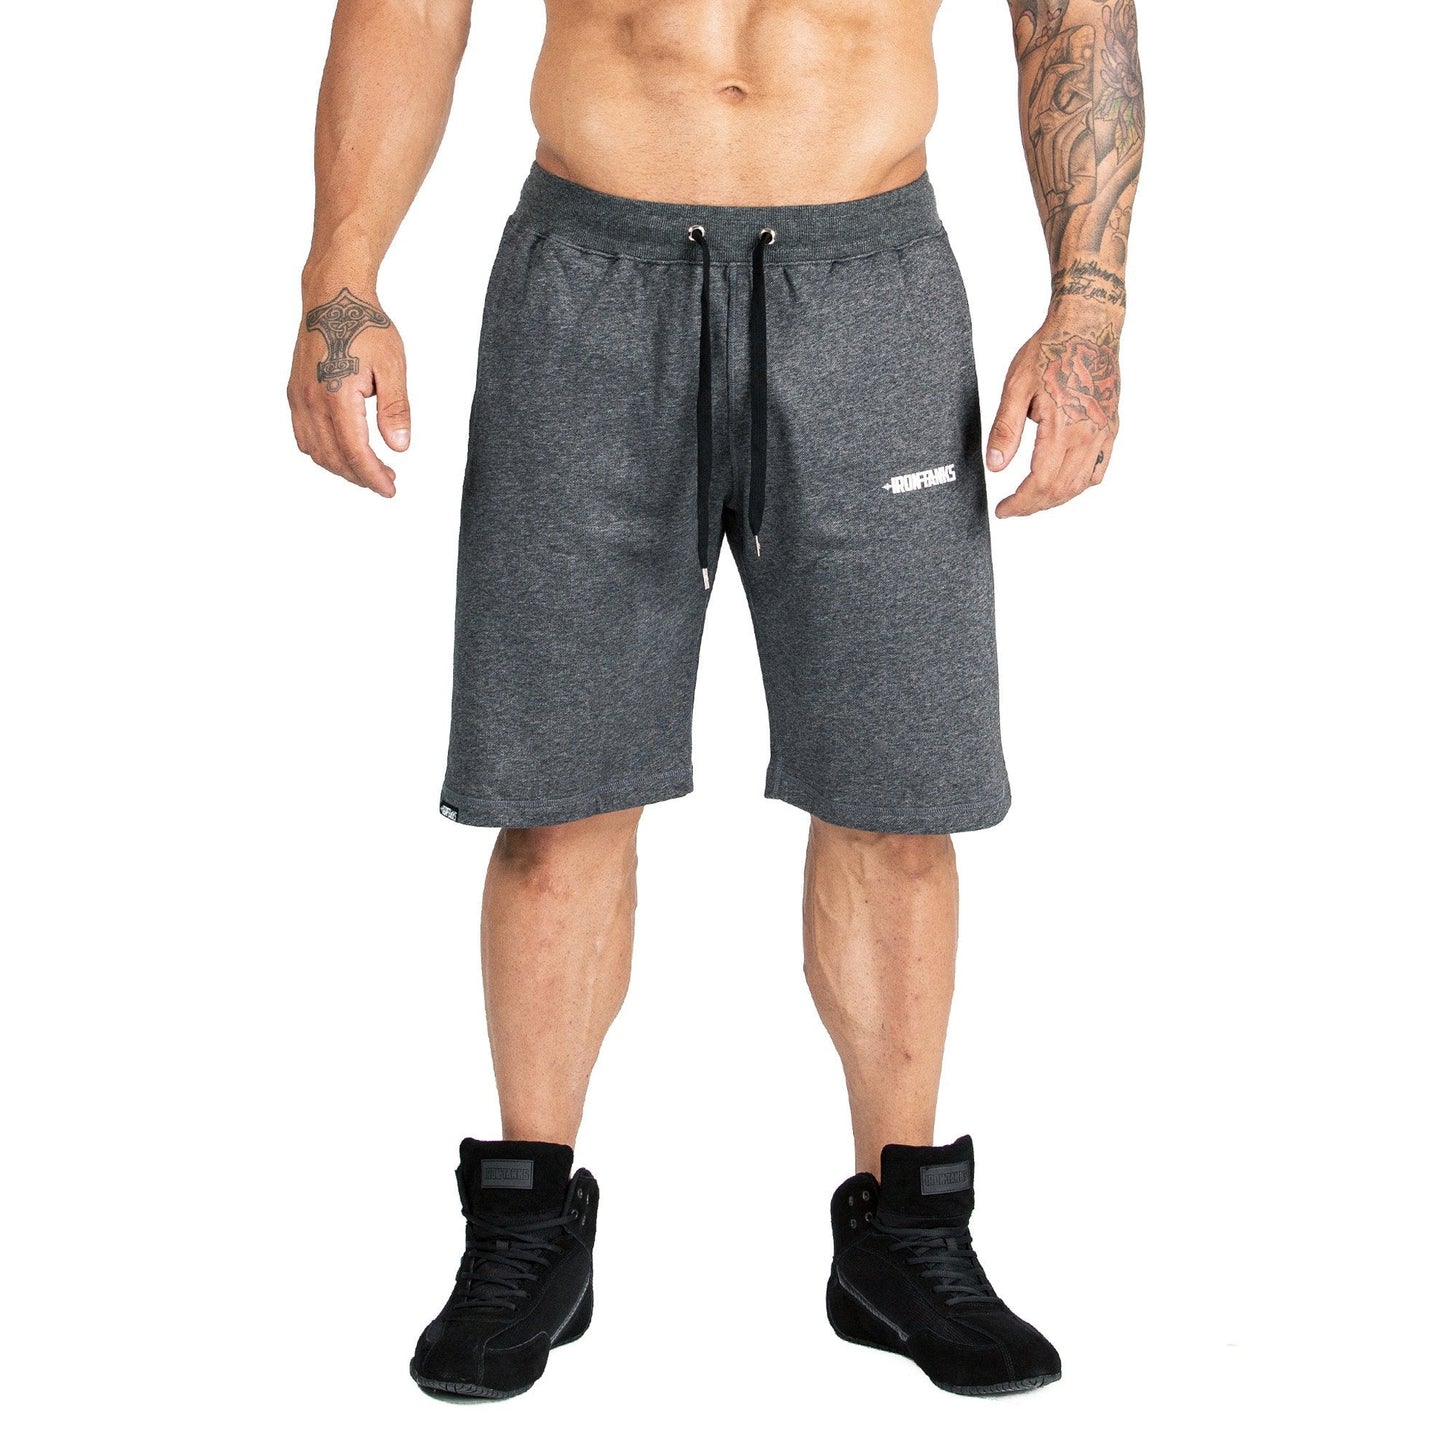 Iron Tanks Men's BFG Gym Shorts II (Carbon Grey)